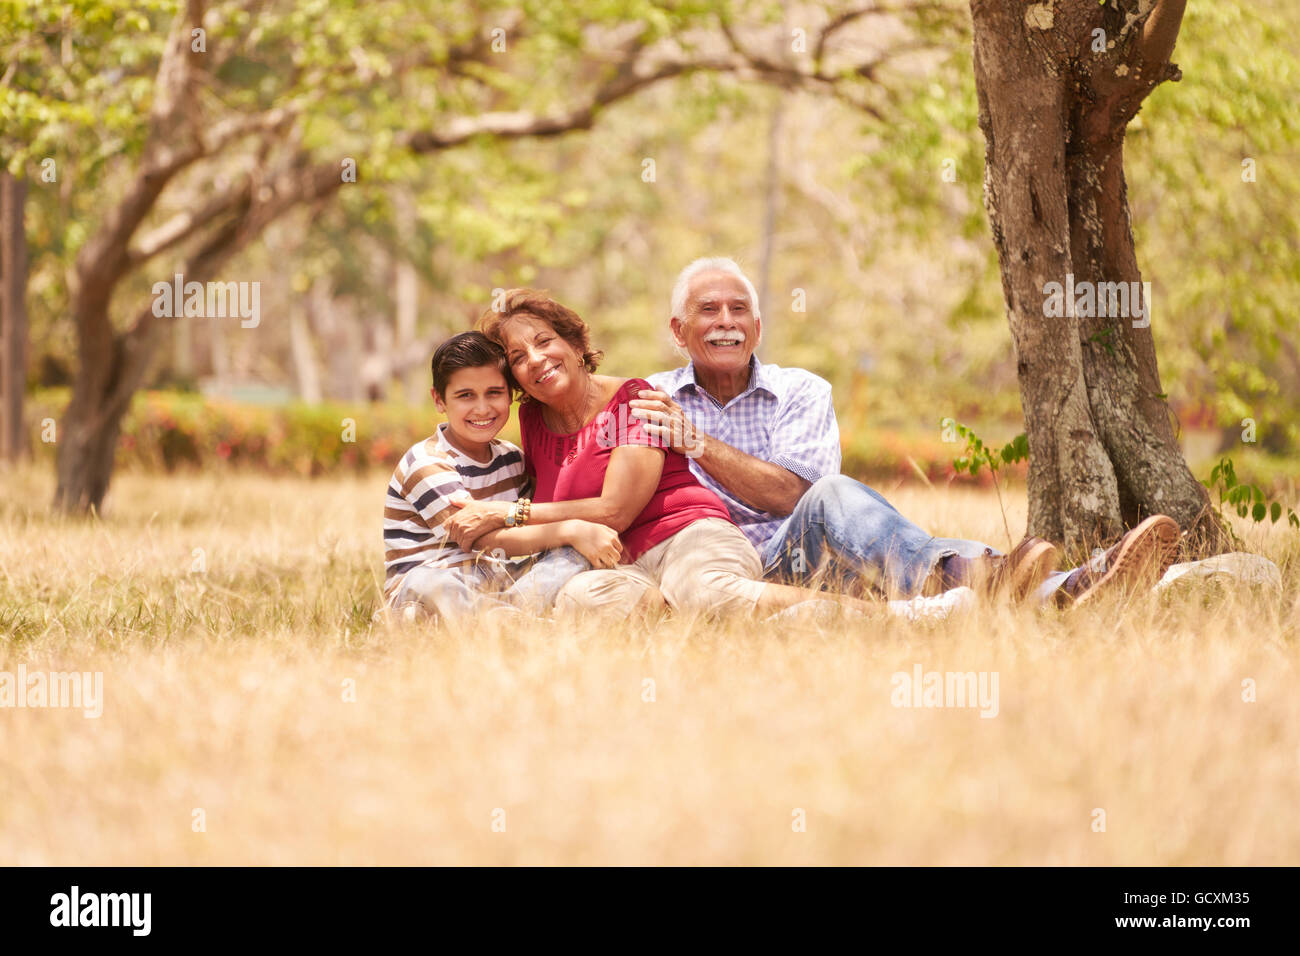 Les personnes âgées, en couple, une femme et un homme âgés. Une famille s'amusant avec papi et mamie hugging boy at picnic Banque D'Images